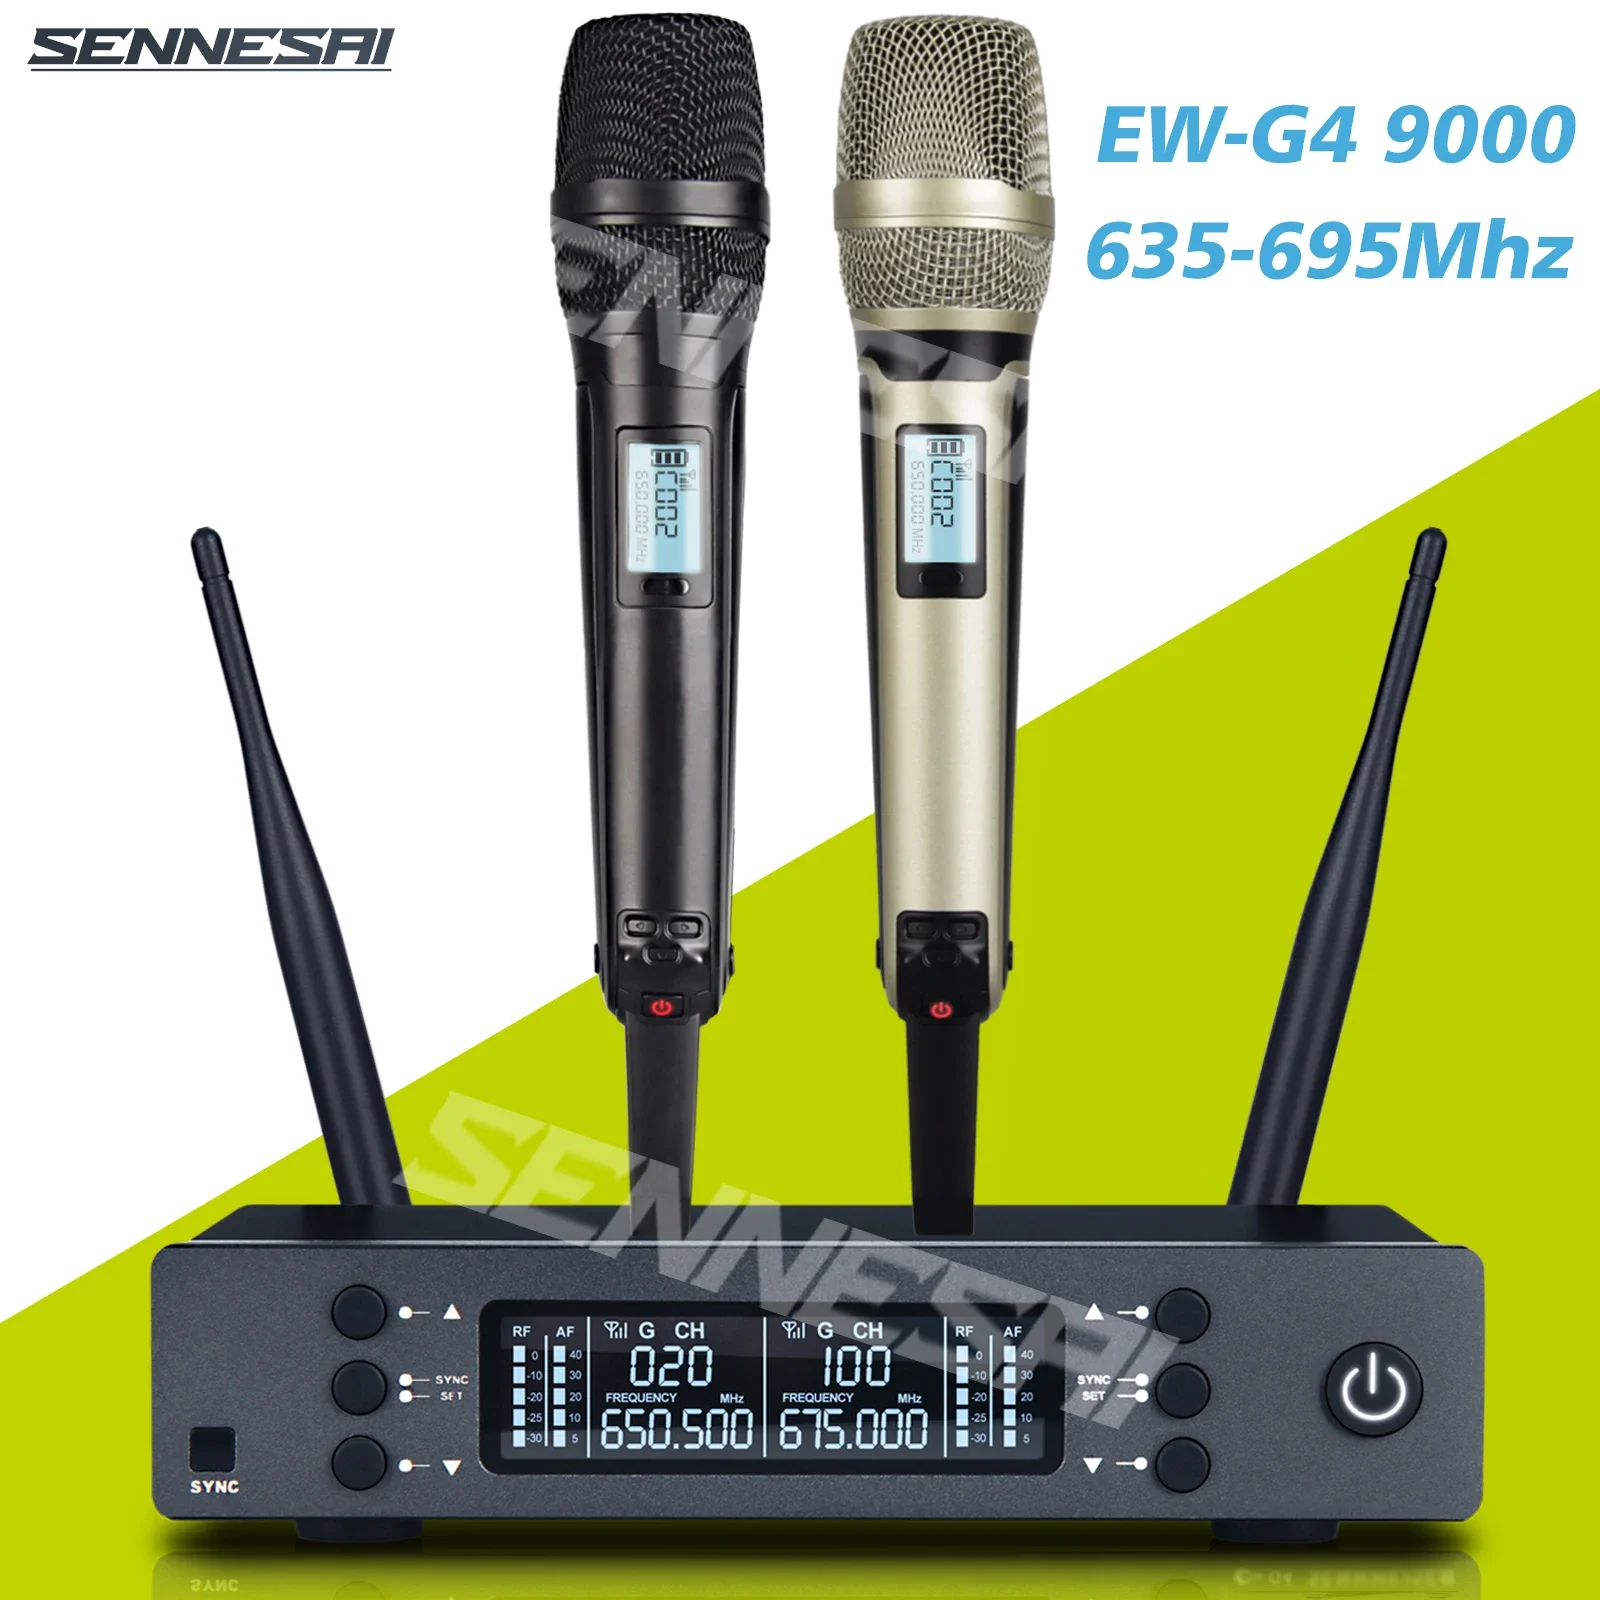 Профессиональный Двойной Беспроводной Микрофон SENNESAI EW-G4 Stage Performance 2 Канала UHF Караоке Металлический Ручной Skm9000, Высочайшее Качество